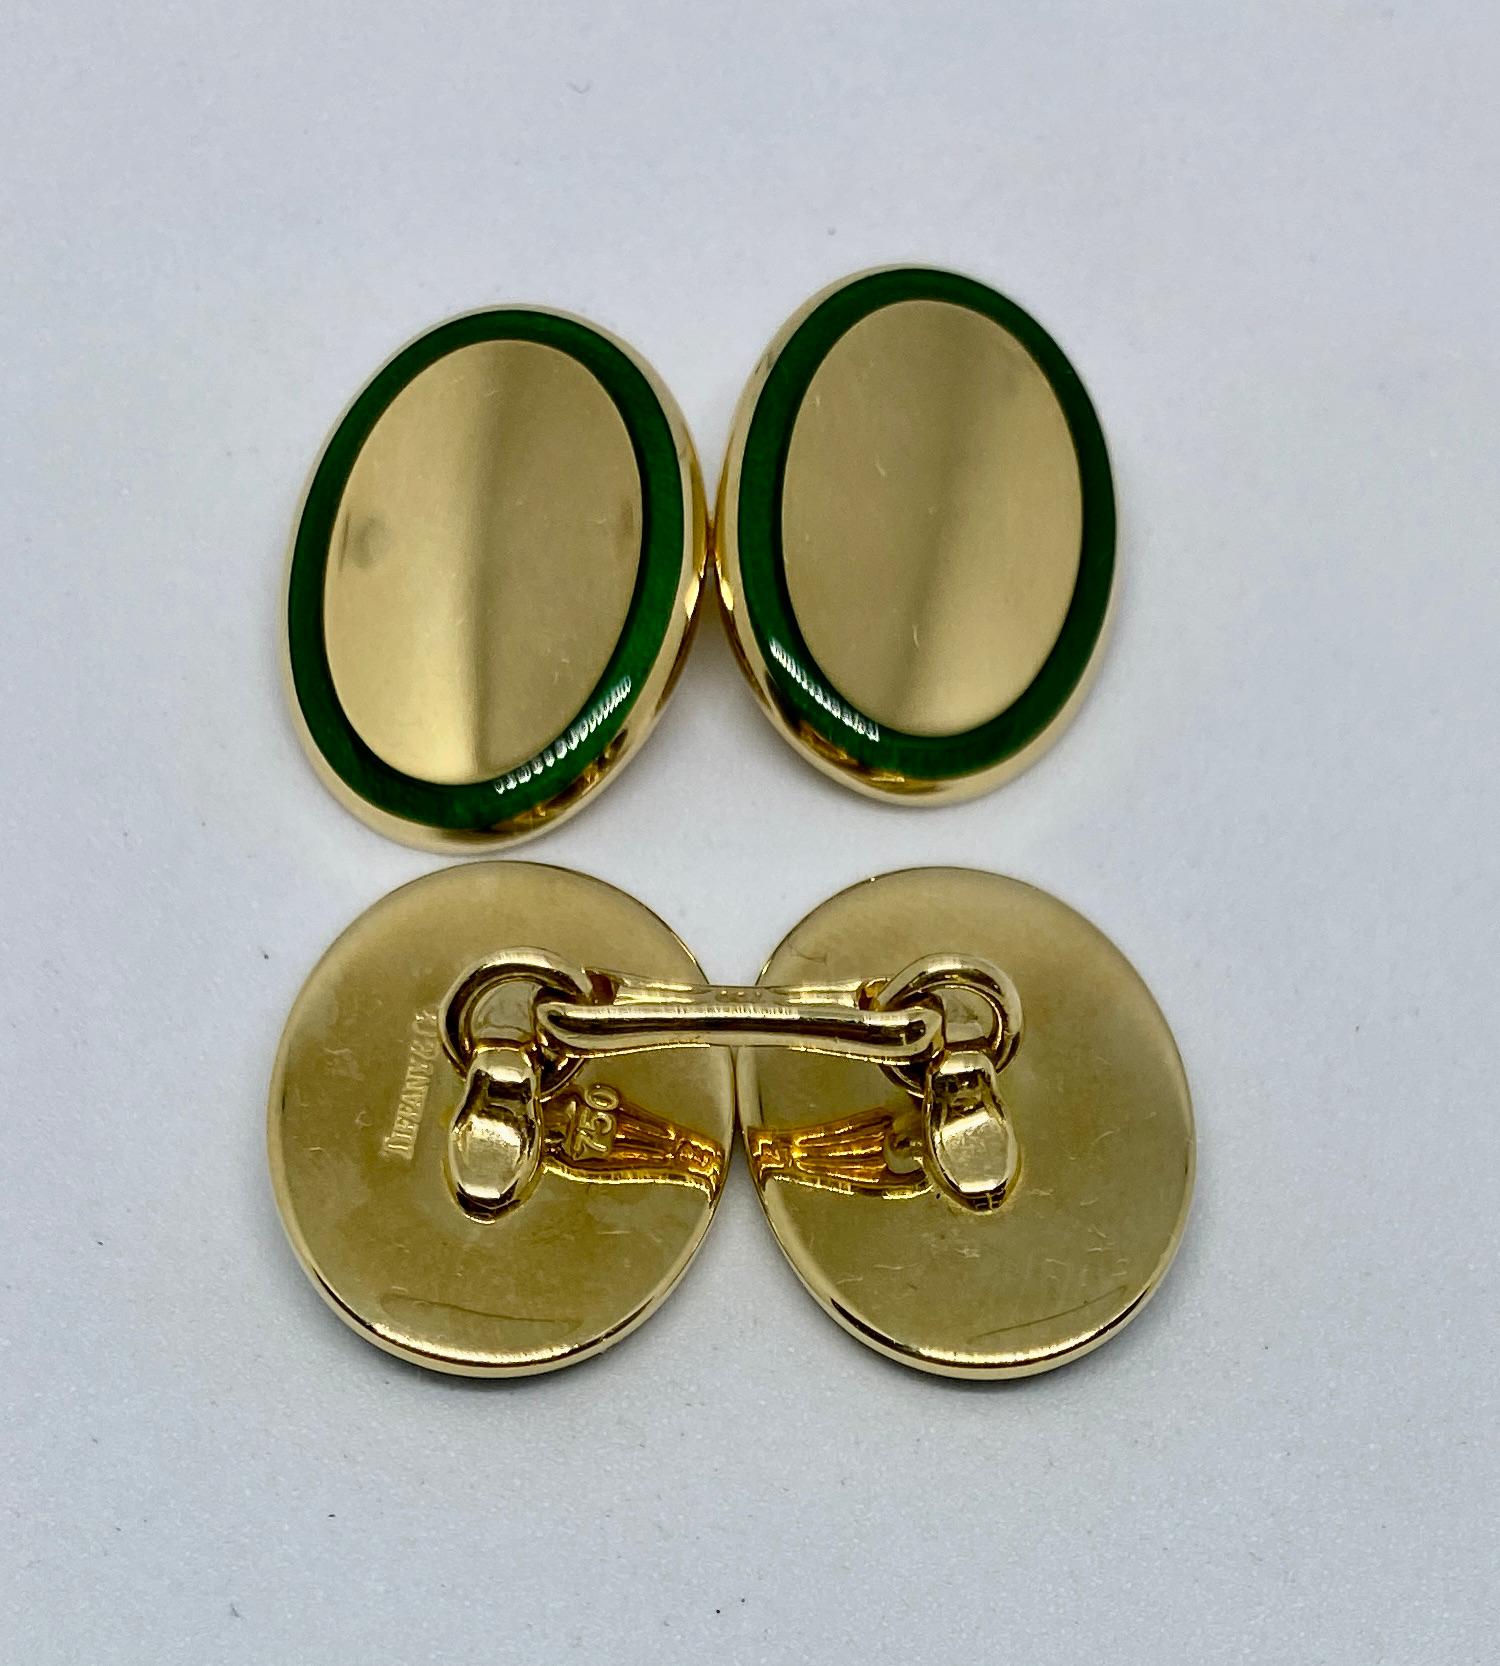 Une paire de boutons de manchette d'une qualité exceptionnelle en or jaune 18 carats massif, avec des bordures en émail vert. 

Les quatre visages ovales mesurent chacun 18,4 x 13,9 mm, et sont attachés à leurs compagnons par de solides connecteurs